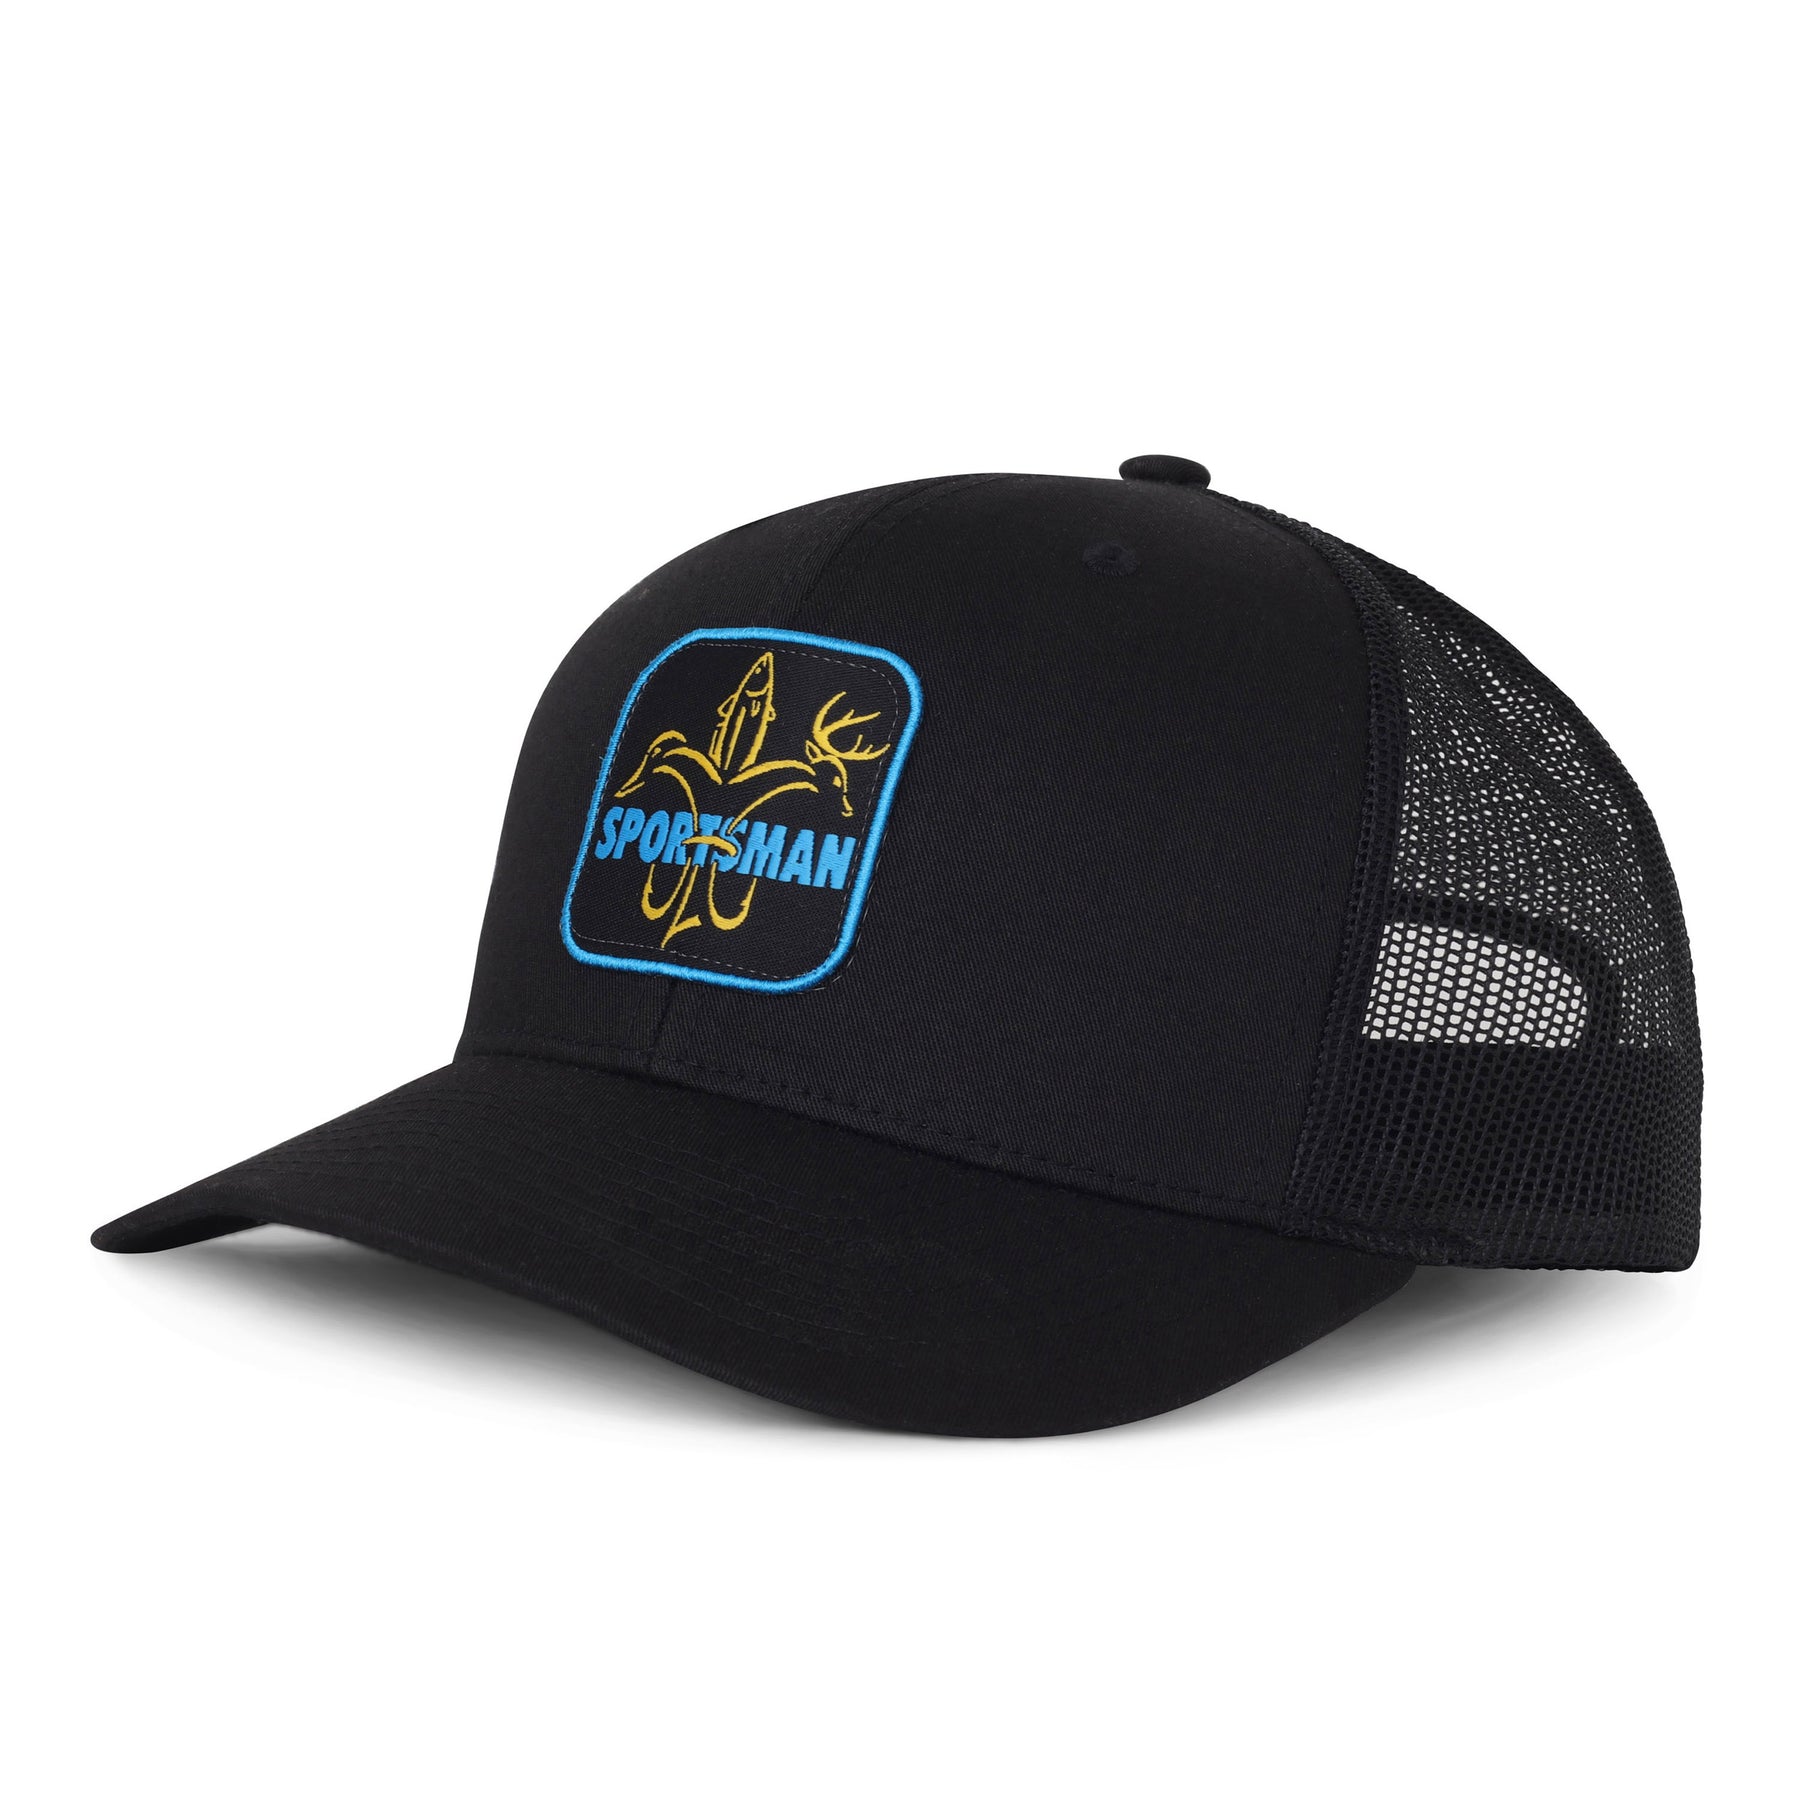 Black Fishing Trucker Hat - Sportsman Gear